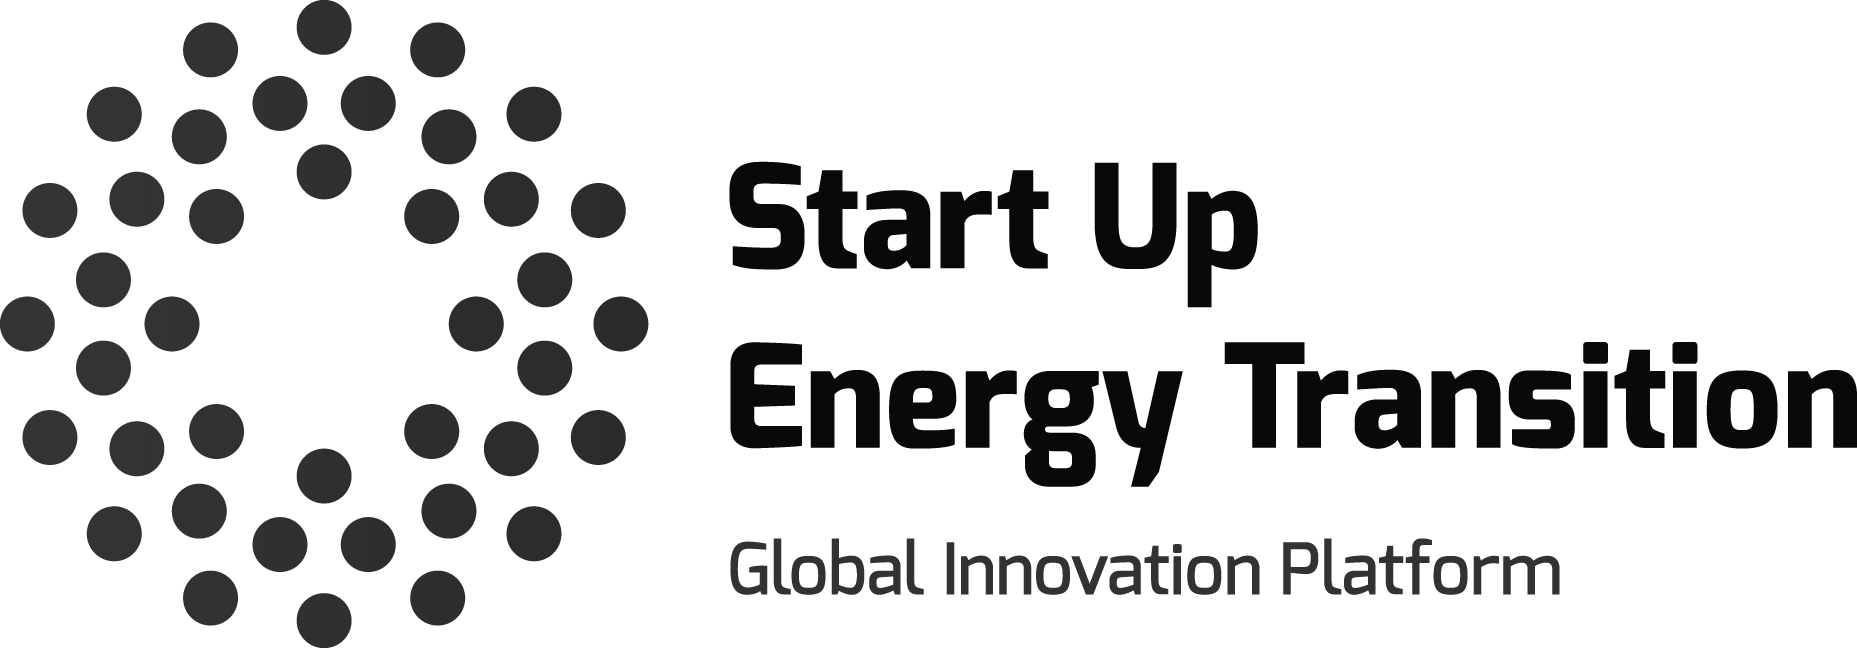 SET_Logo_2019_Global_Innovation_Platform_s_w